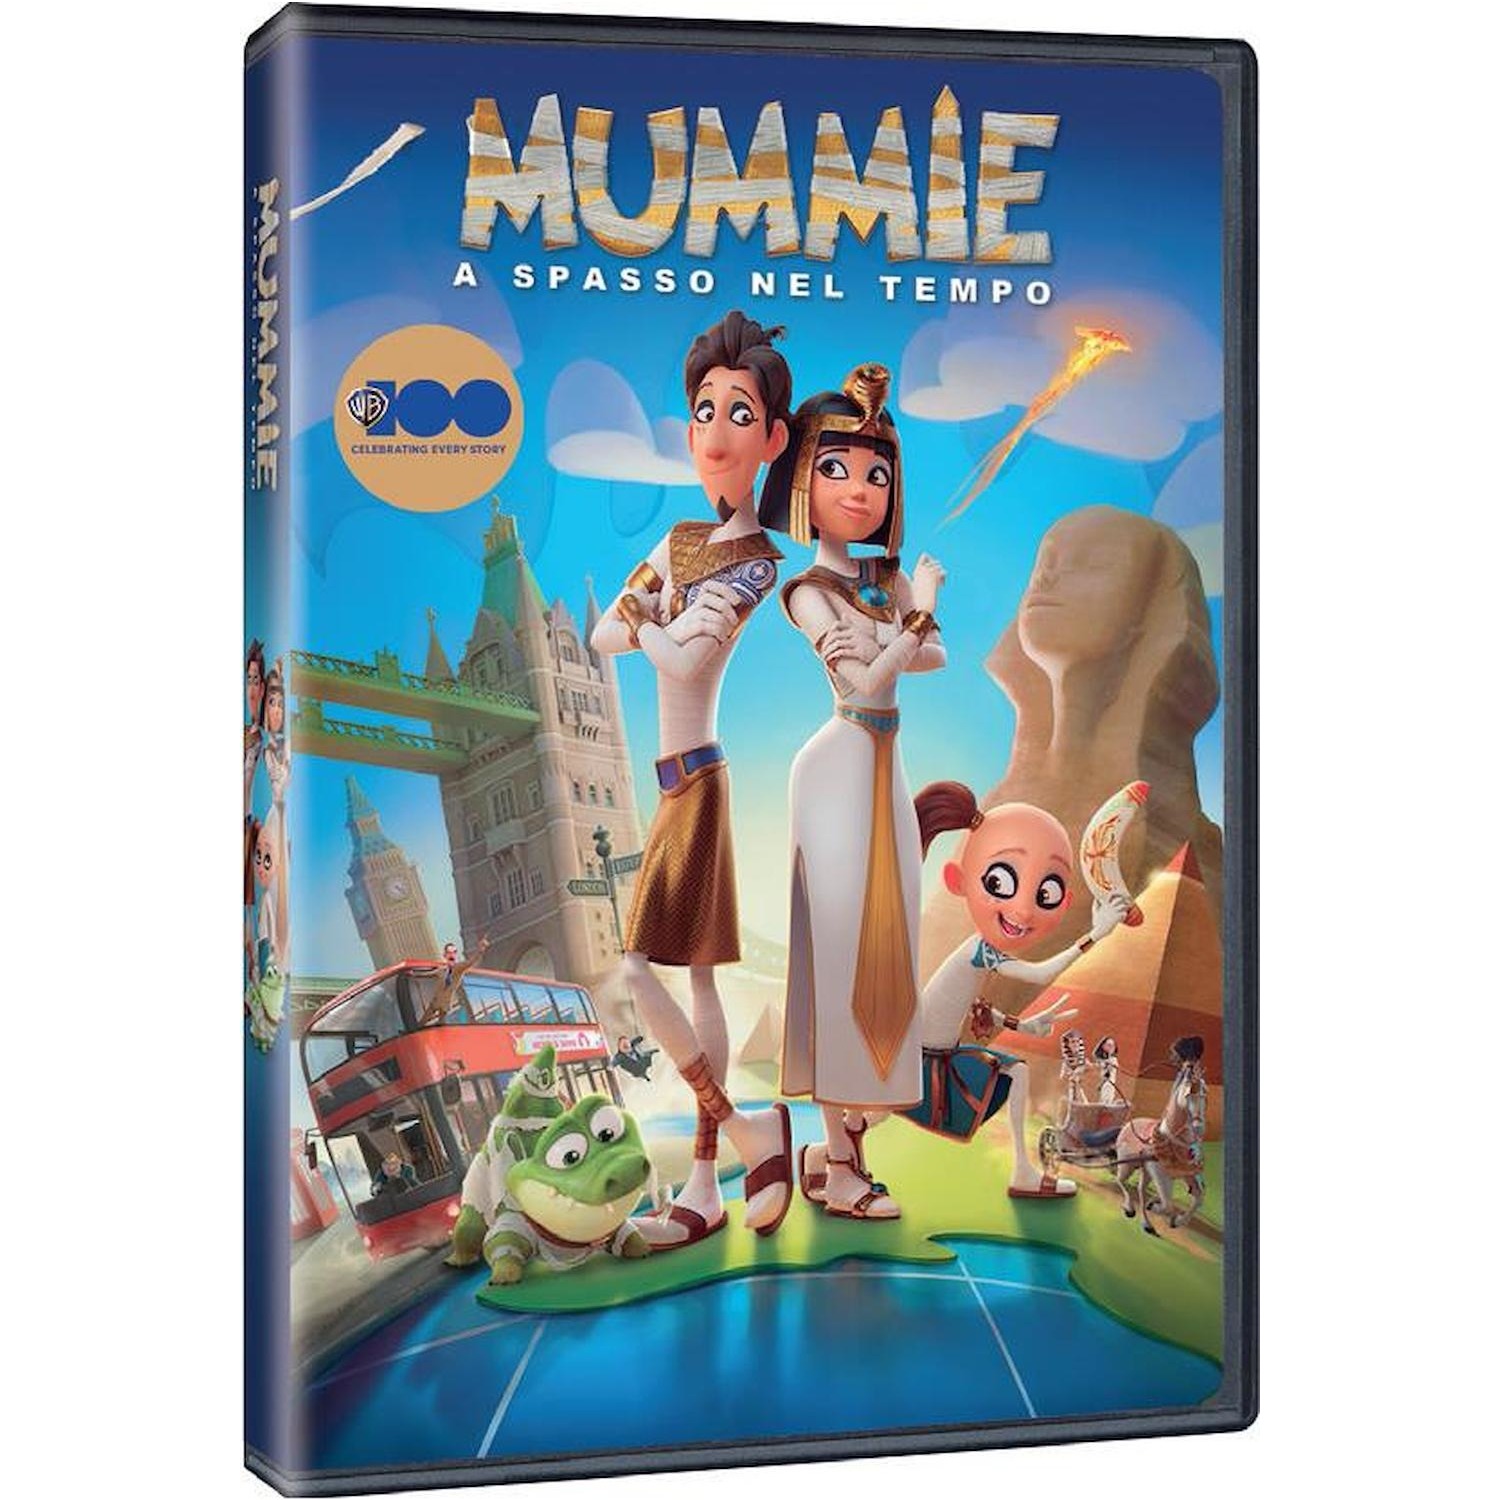 Immagine per DVD Mummie - A spasso nel tempo da DIMOStore